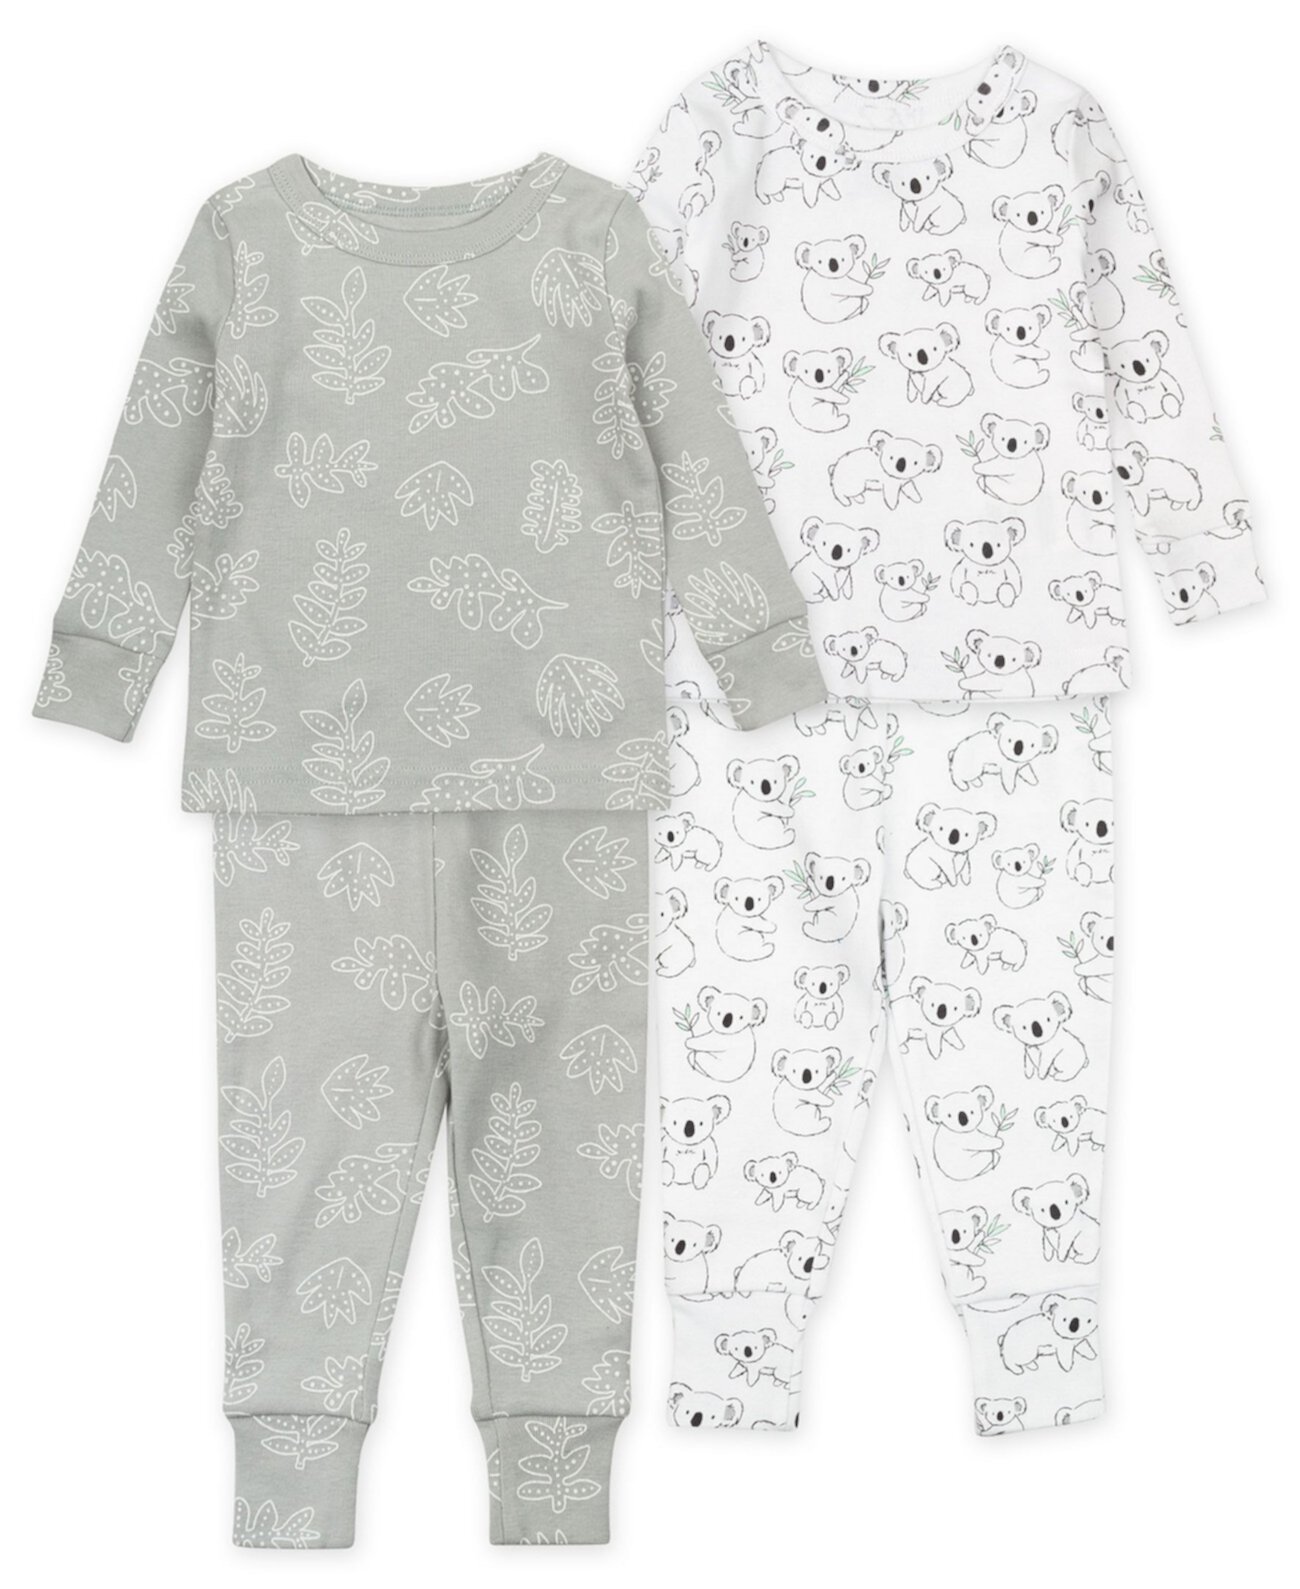 Пижамный комплект с коалой для мальчиков и девочек S21, 4 предмета Mac & Moon